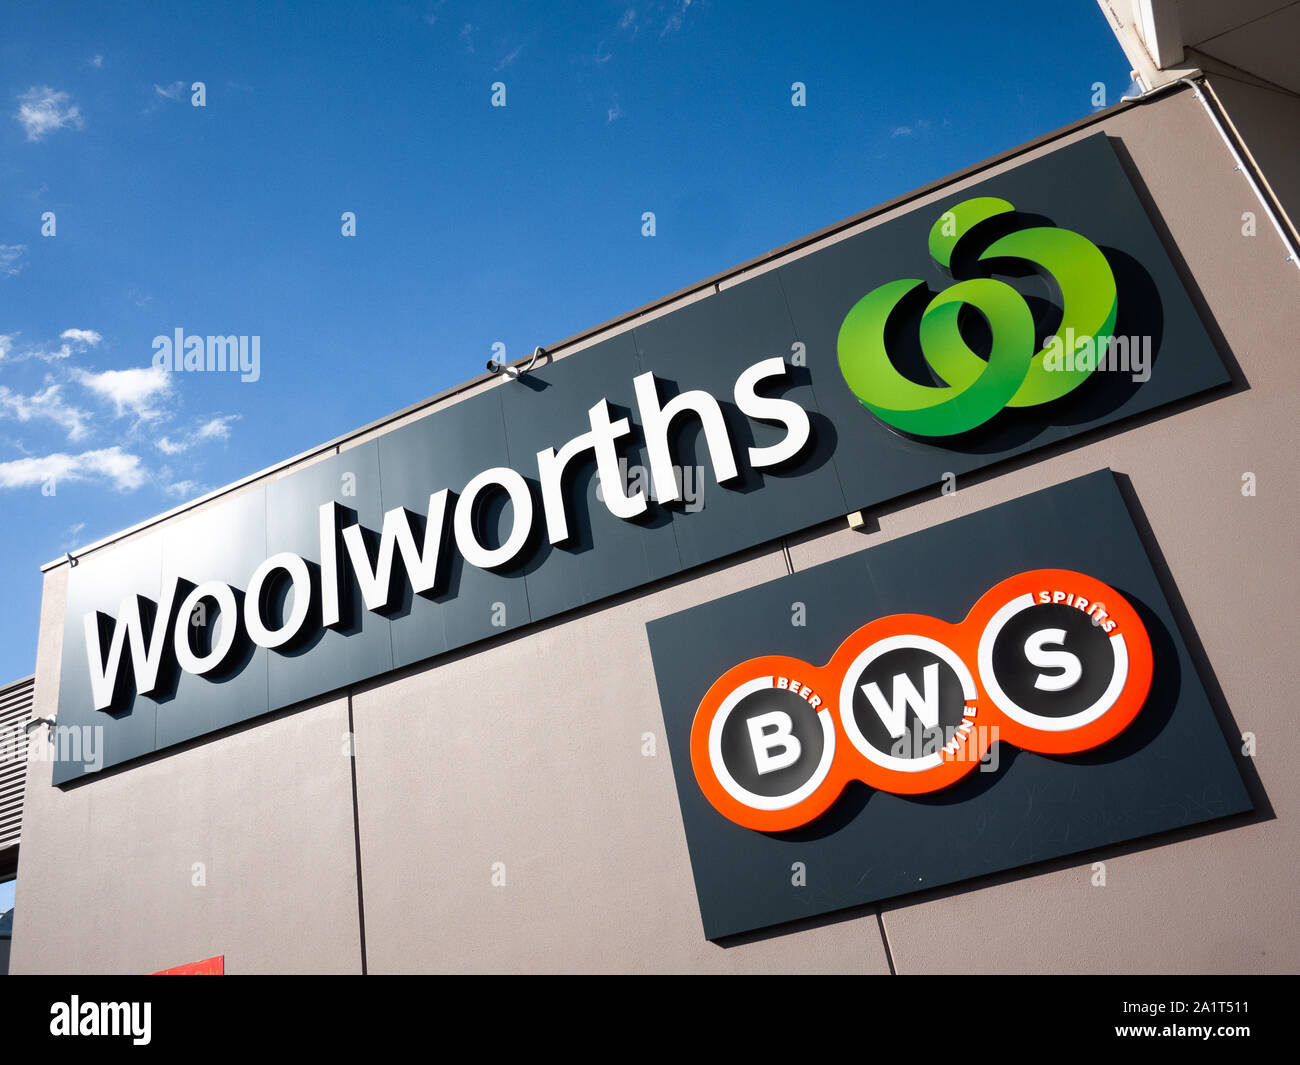 Cartello del supermercato Woolworths e BWS sull'edificio. BWS è una catena australiana di negozi di liquori di proprietà di Woolworths Limited. Melbourne, Victoria Foto Stock